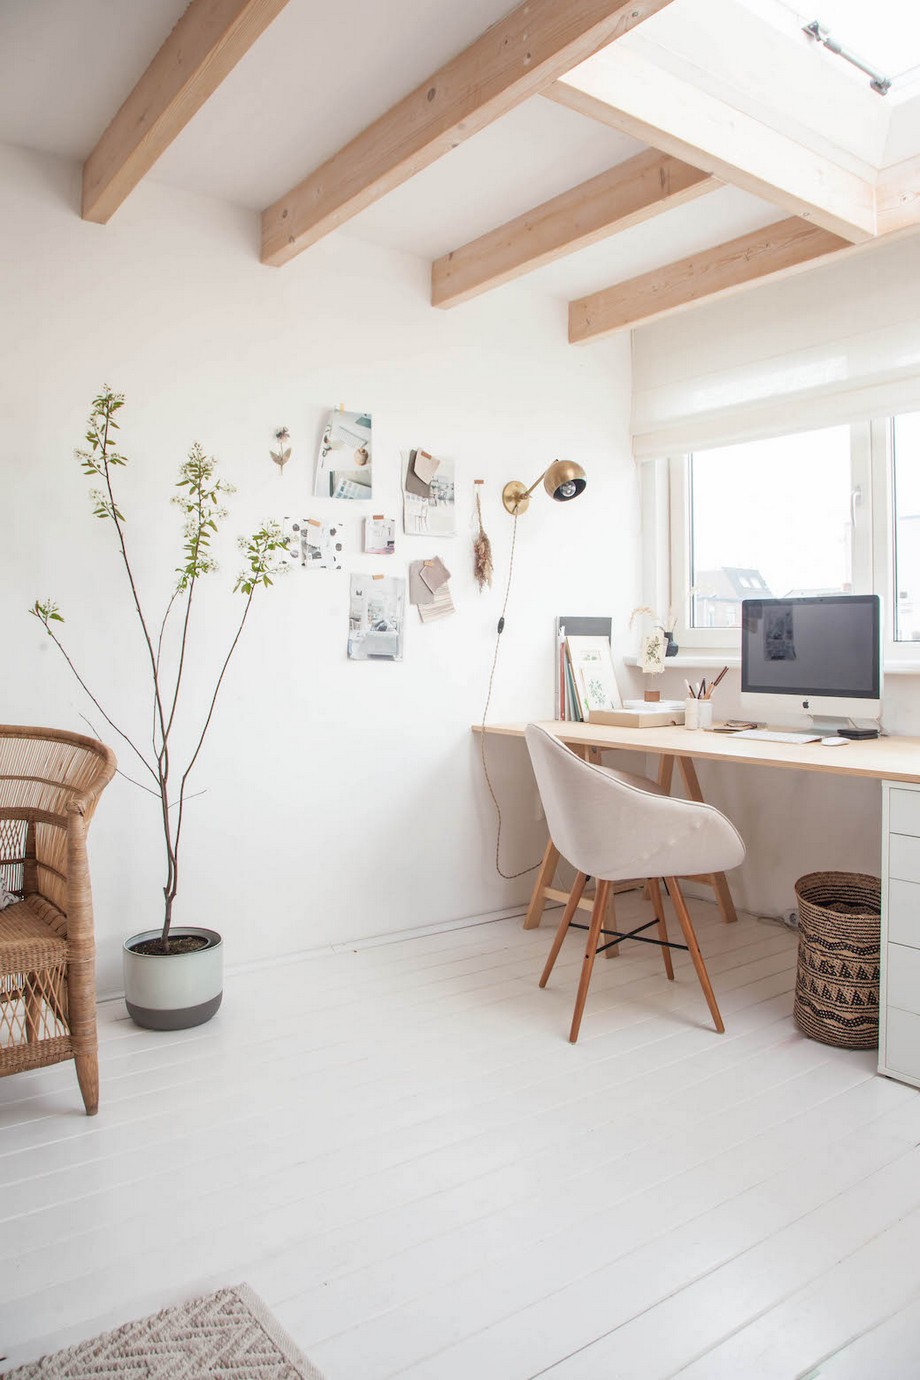 Đột nhập mẫu thiết kế văn phòng nhỏ kết hợp nhà ở trang nhã, gọn gàng > Thiết kế văn phòng làm việc tại nhà đẹp và lãng mạn